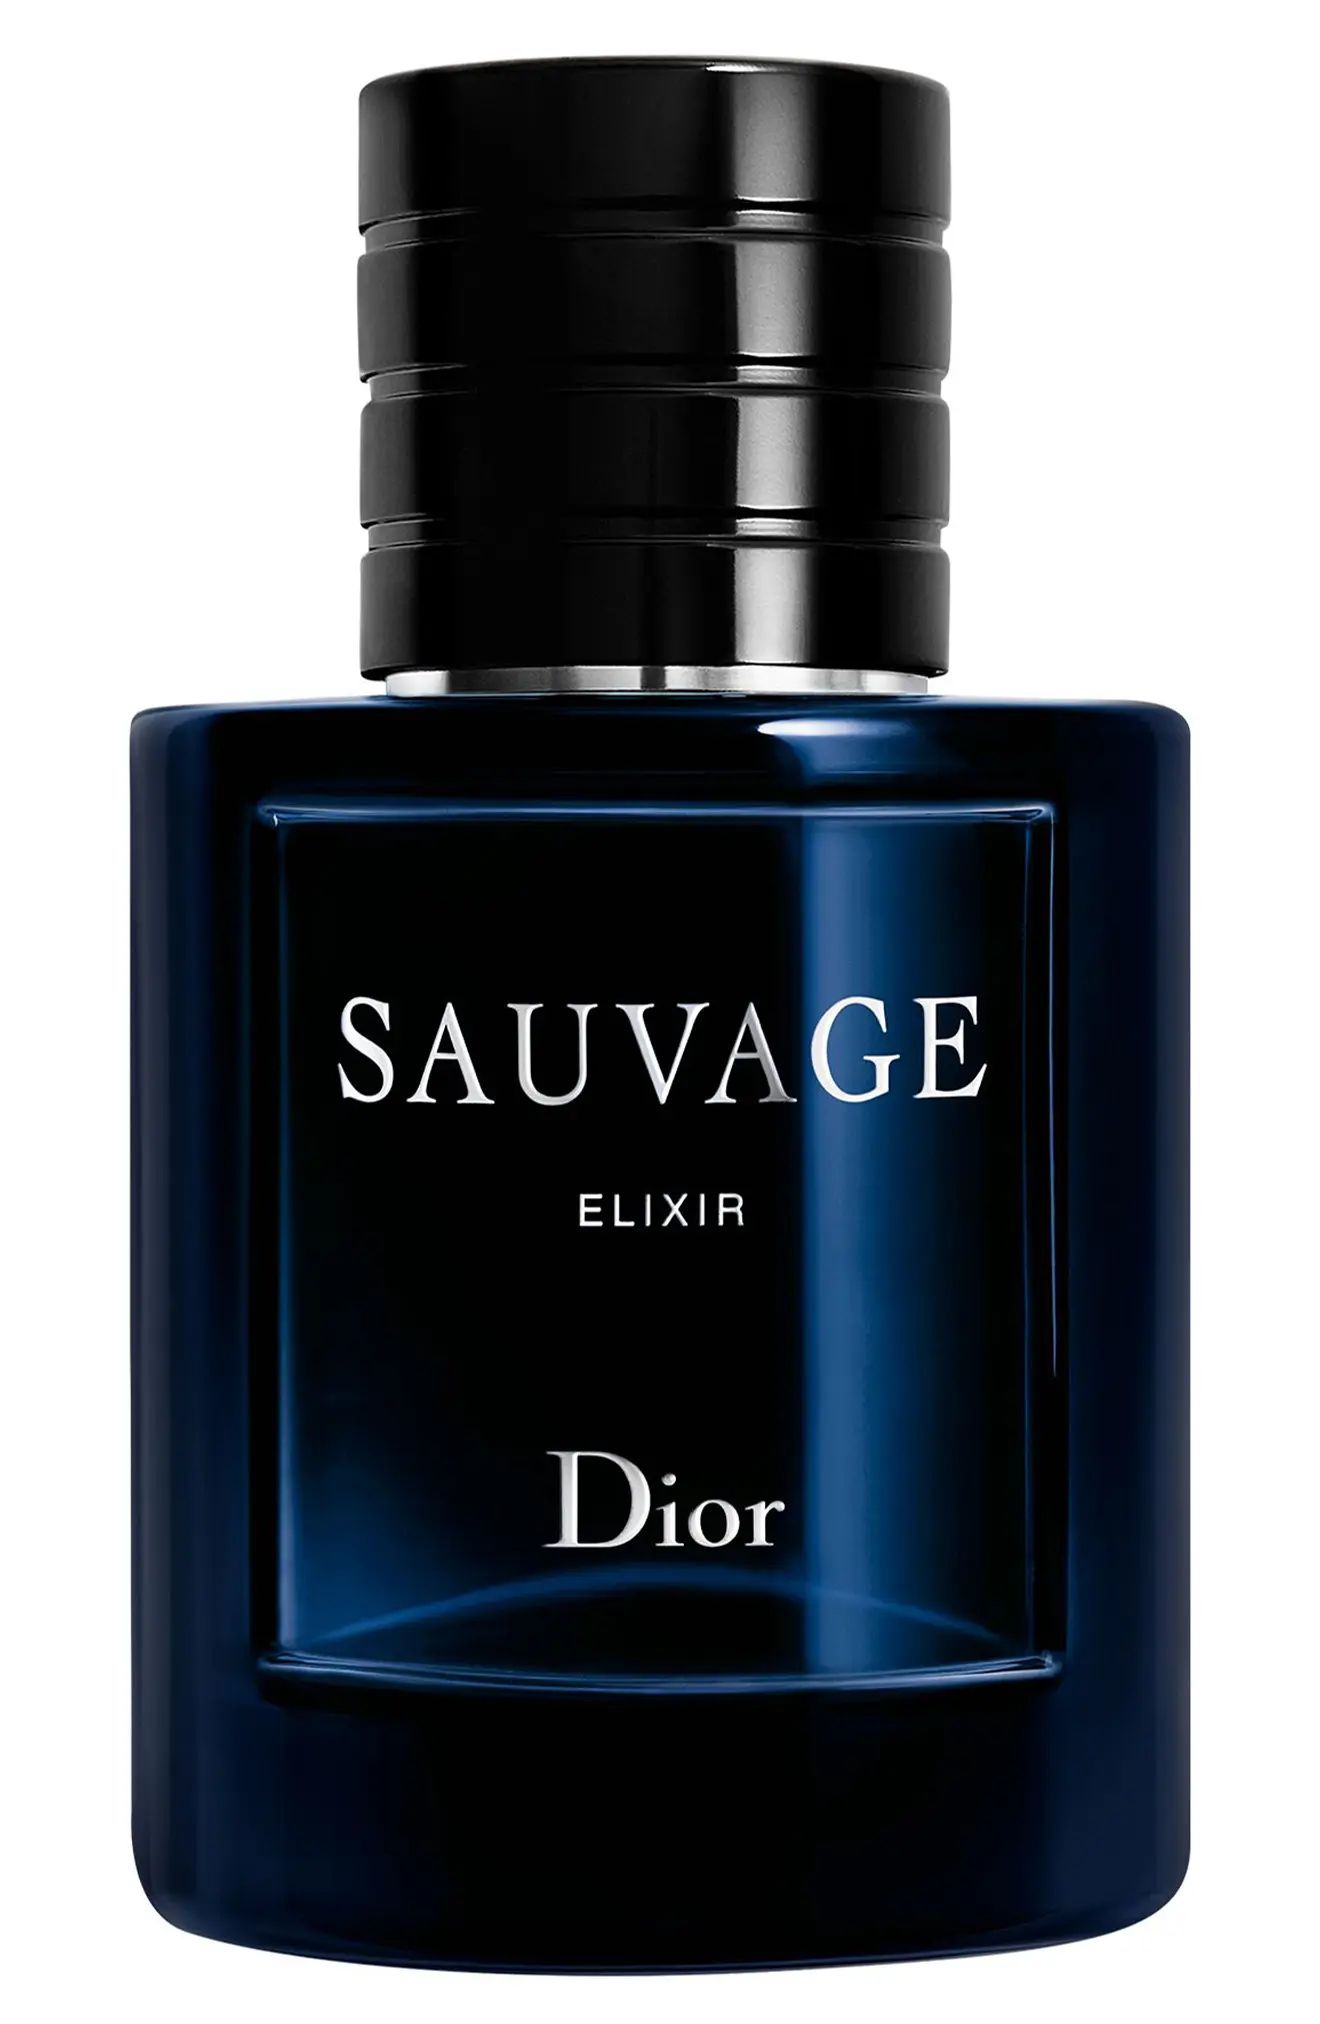 Dior Sauvage Elixir Fragrance, Size 2 Oz at Nordstrom | Nordstrom